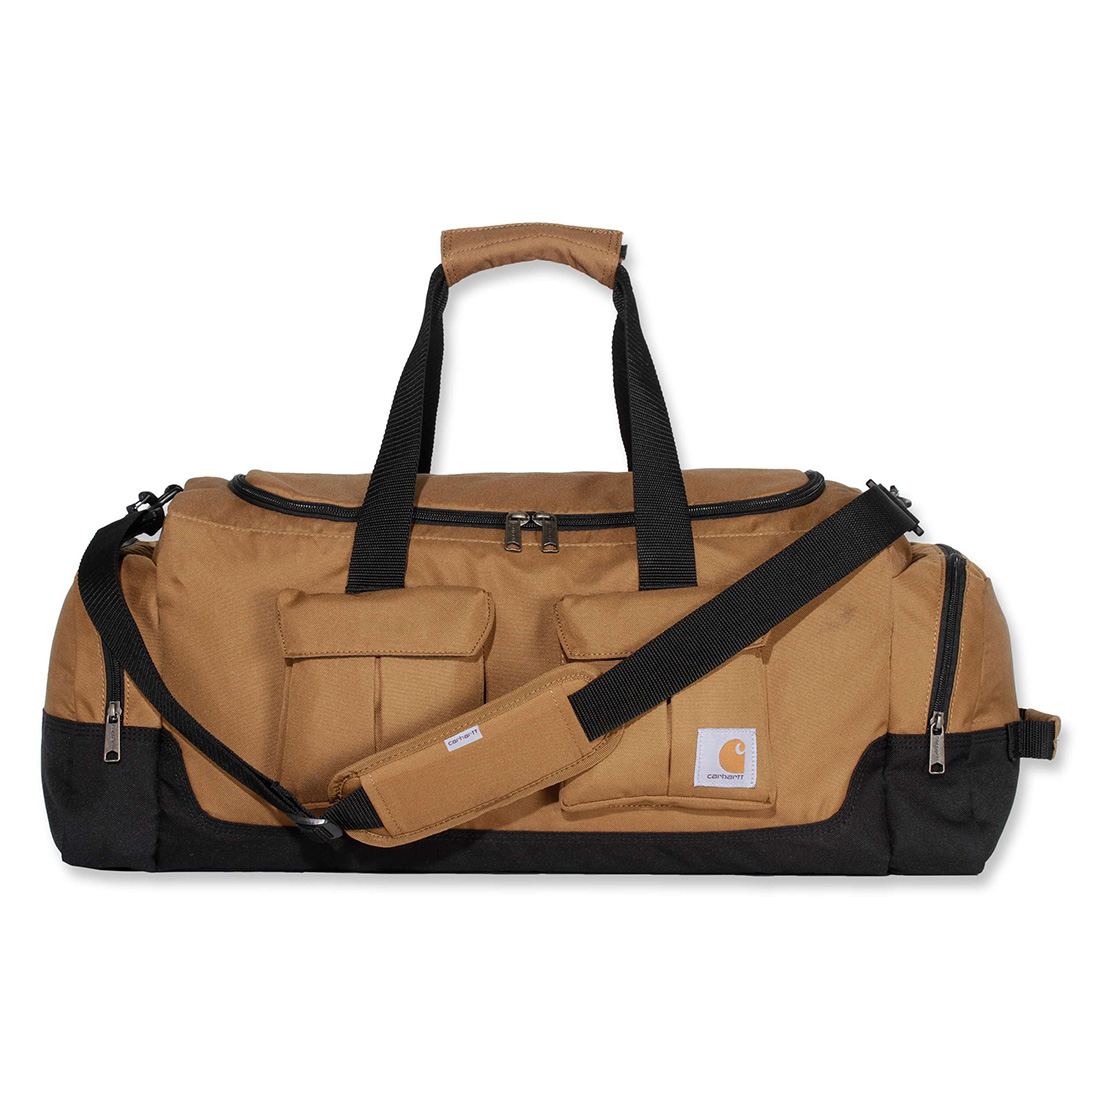 Carhartt Utility Duffel Rain Defender 40L Bag carhartt brown | Bags ...